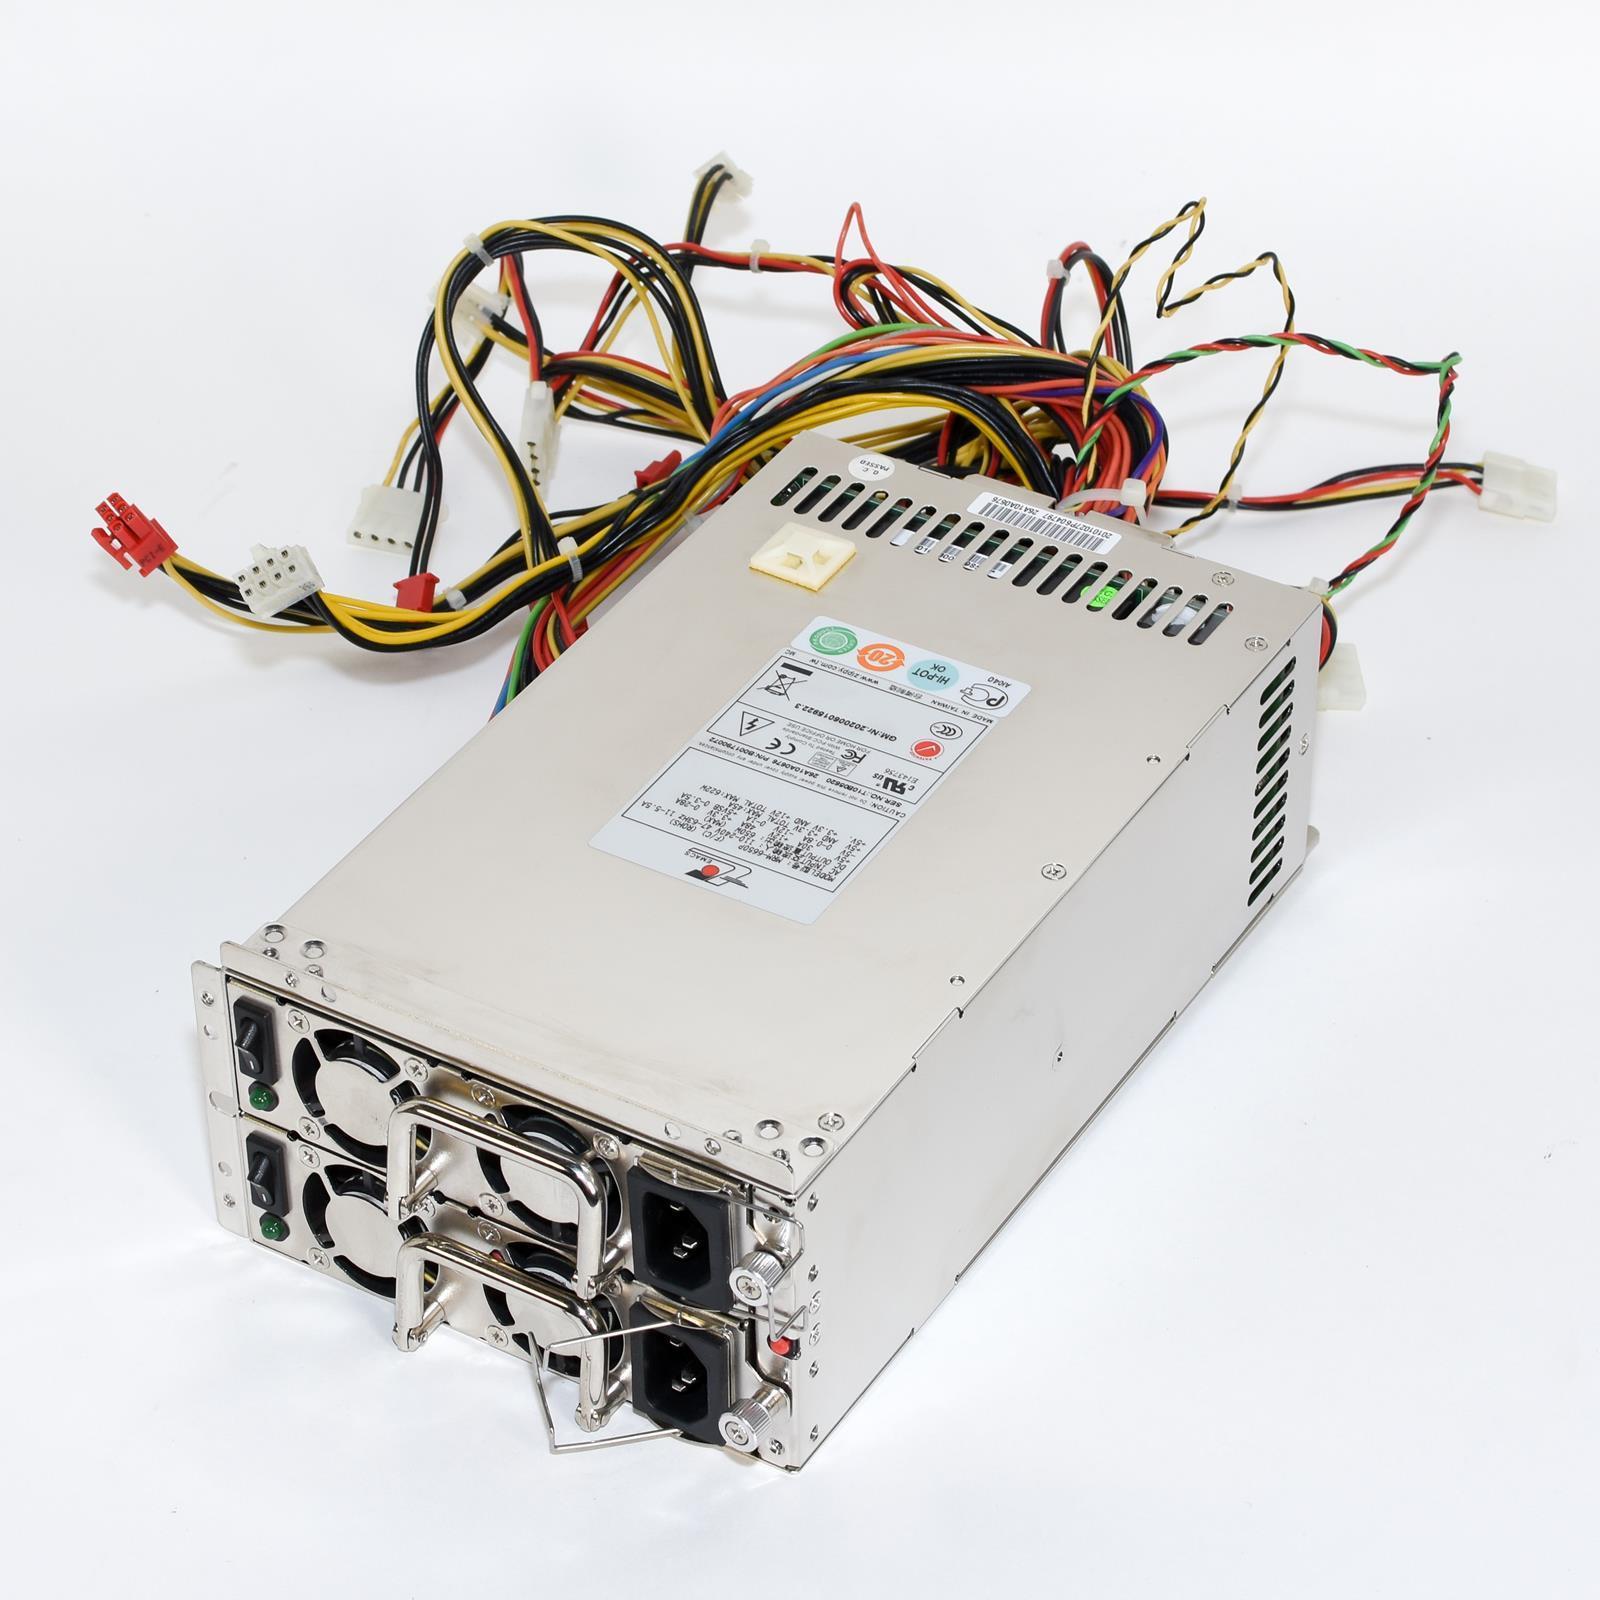 EMACS MRM-6650P Mini fuente de alimentación industrial redundante 650W (REACONDICIONADA)